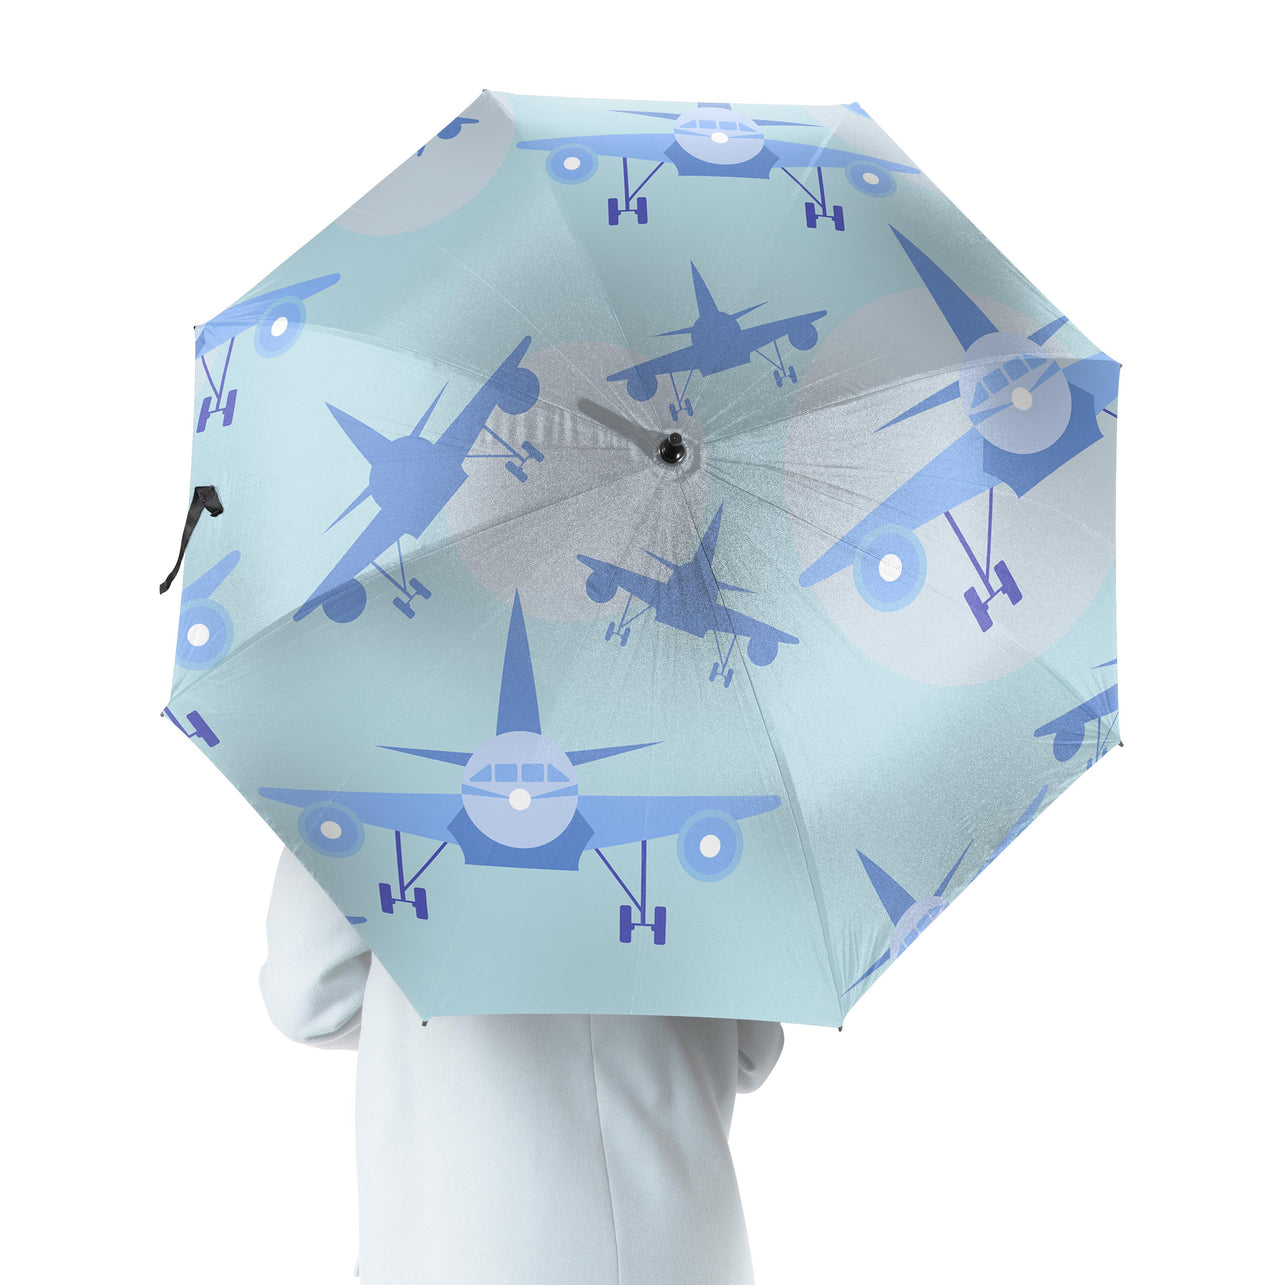 Super Funny Airplanes Designed Umbrella